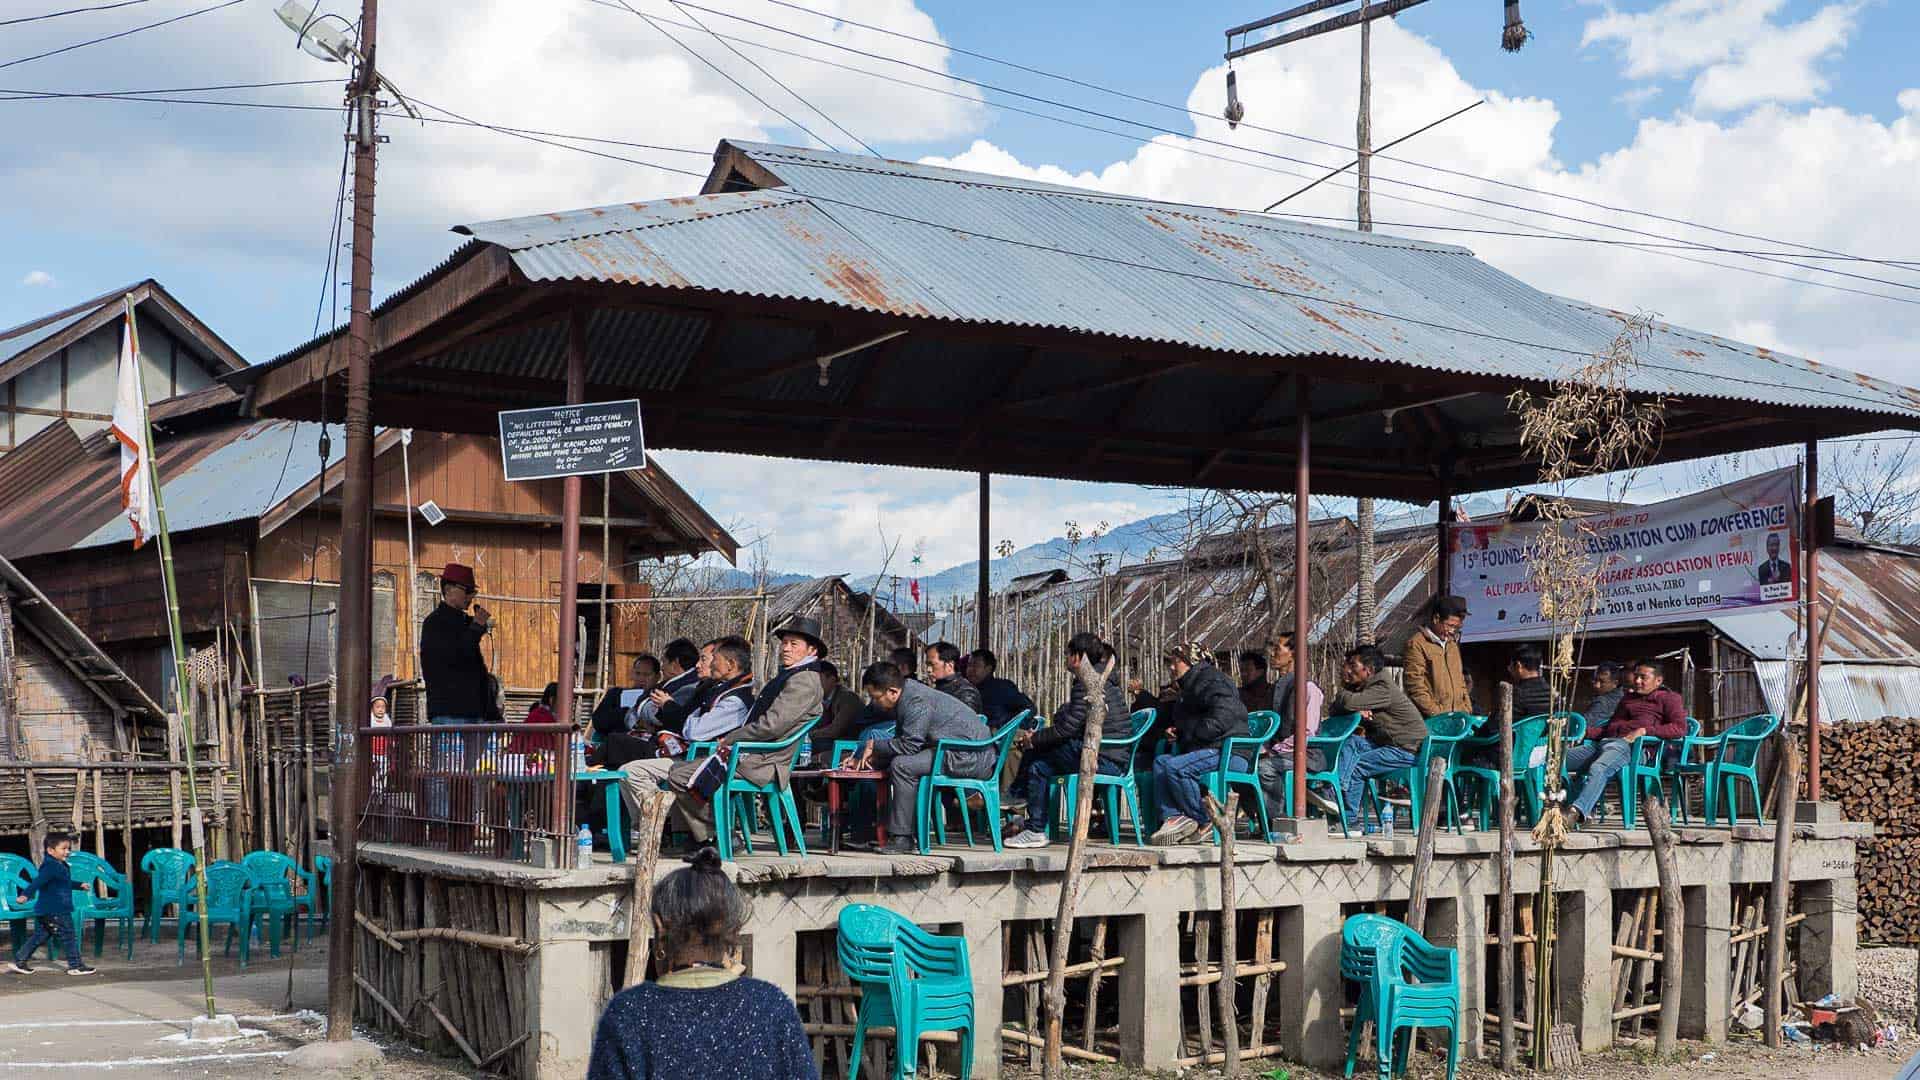 sikkim.ch | Nordostinidien und Sikkim Reisen - Bild zu Journey to the land of sunrise: Arunachal Pradesh, India